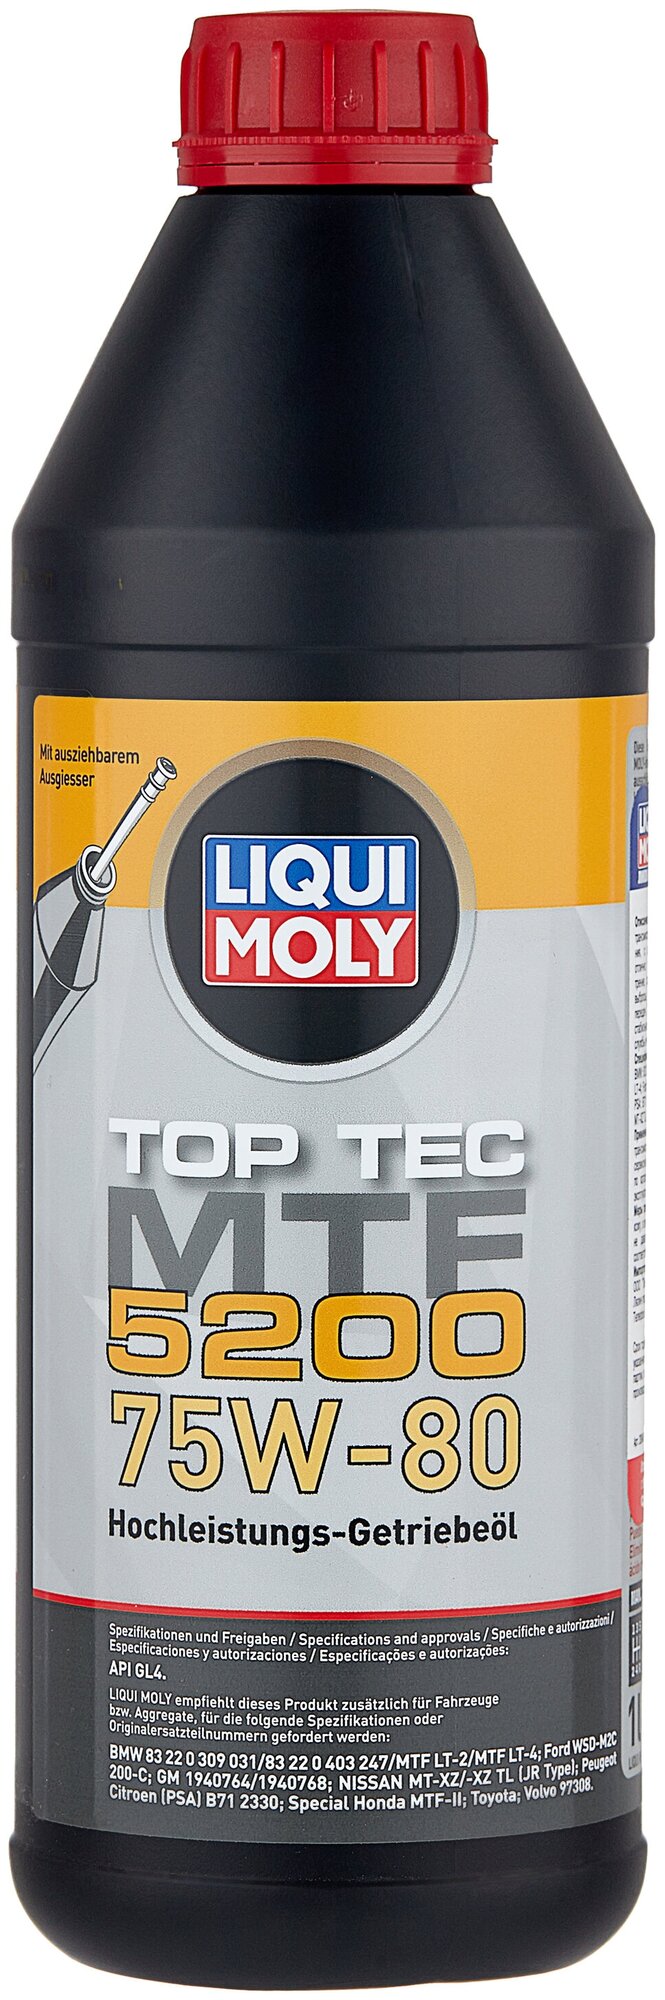 Масло трансмиссионное LIQUI MOLY Top Tec MTF 5200, 75W-80, 1 л, 1 шт.